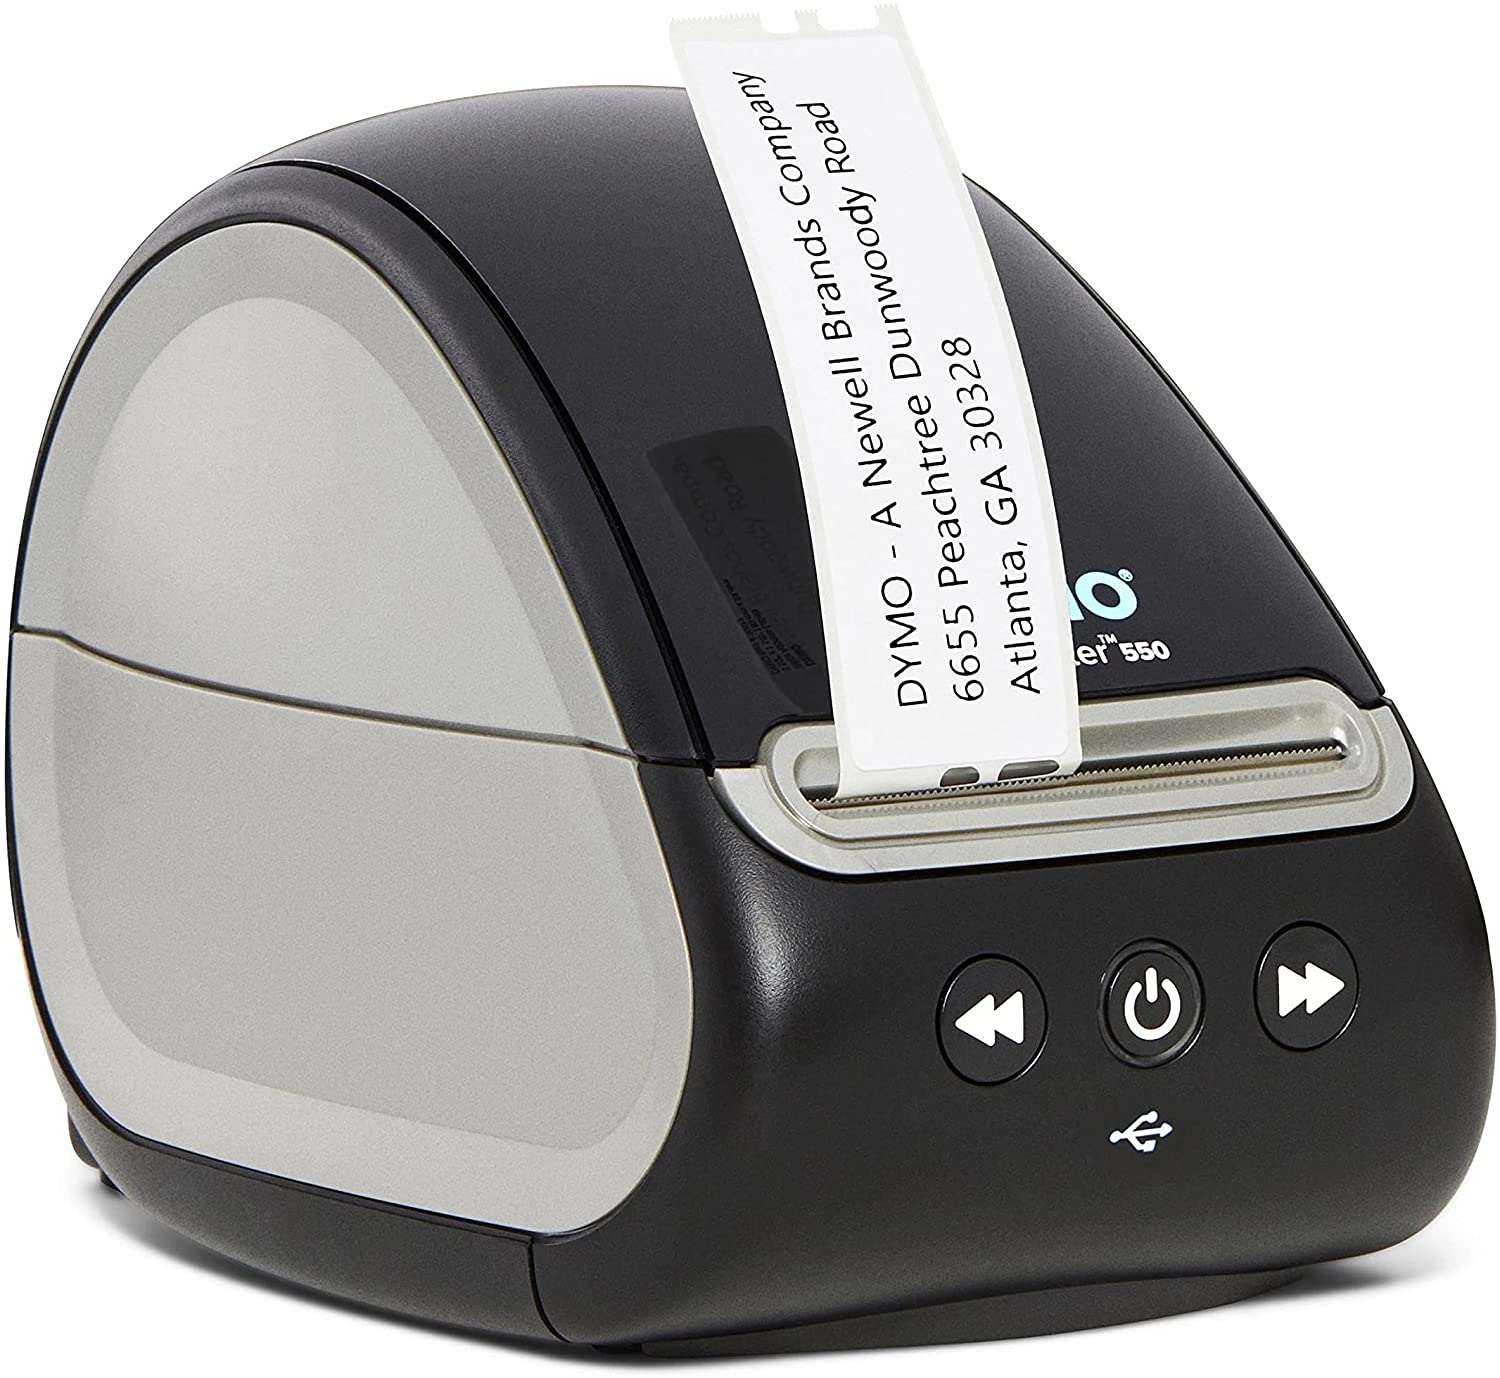 【折300+10%回饋】【美國代購】DYMO LabelWriter 550 標籤機 熱敏打印功能的標籤機 打印地址 條碼標籤等